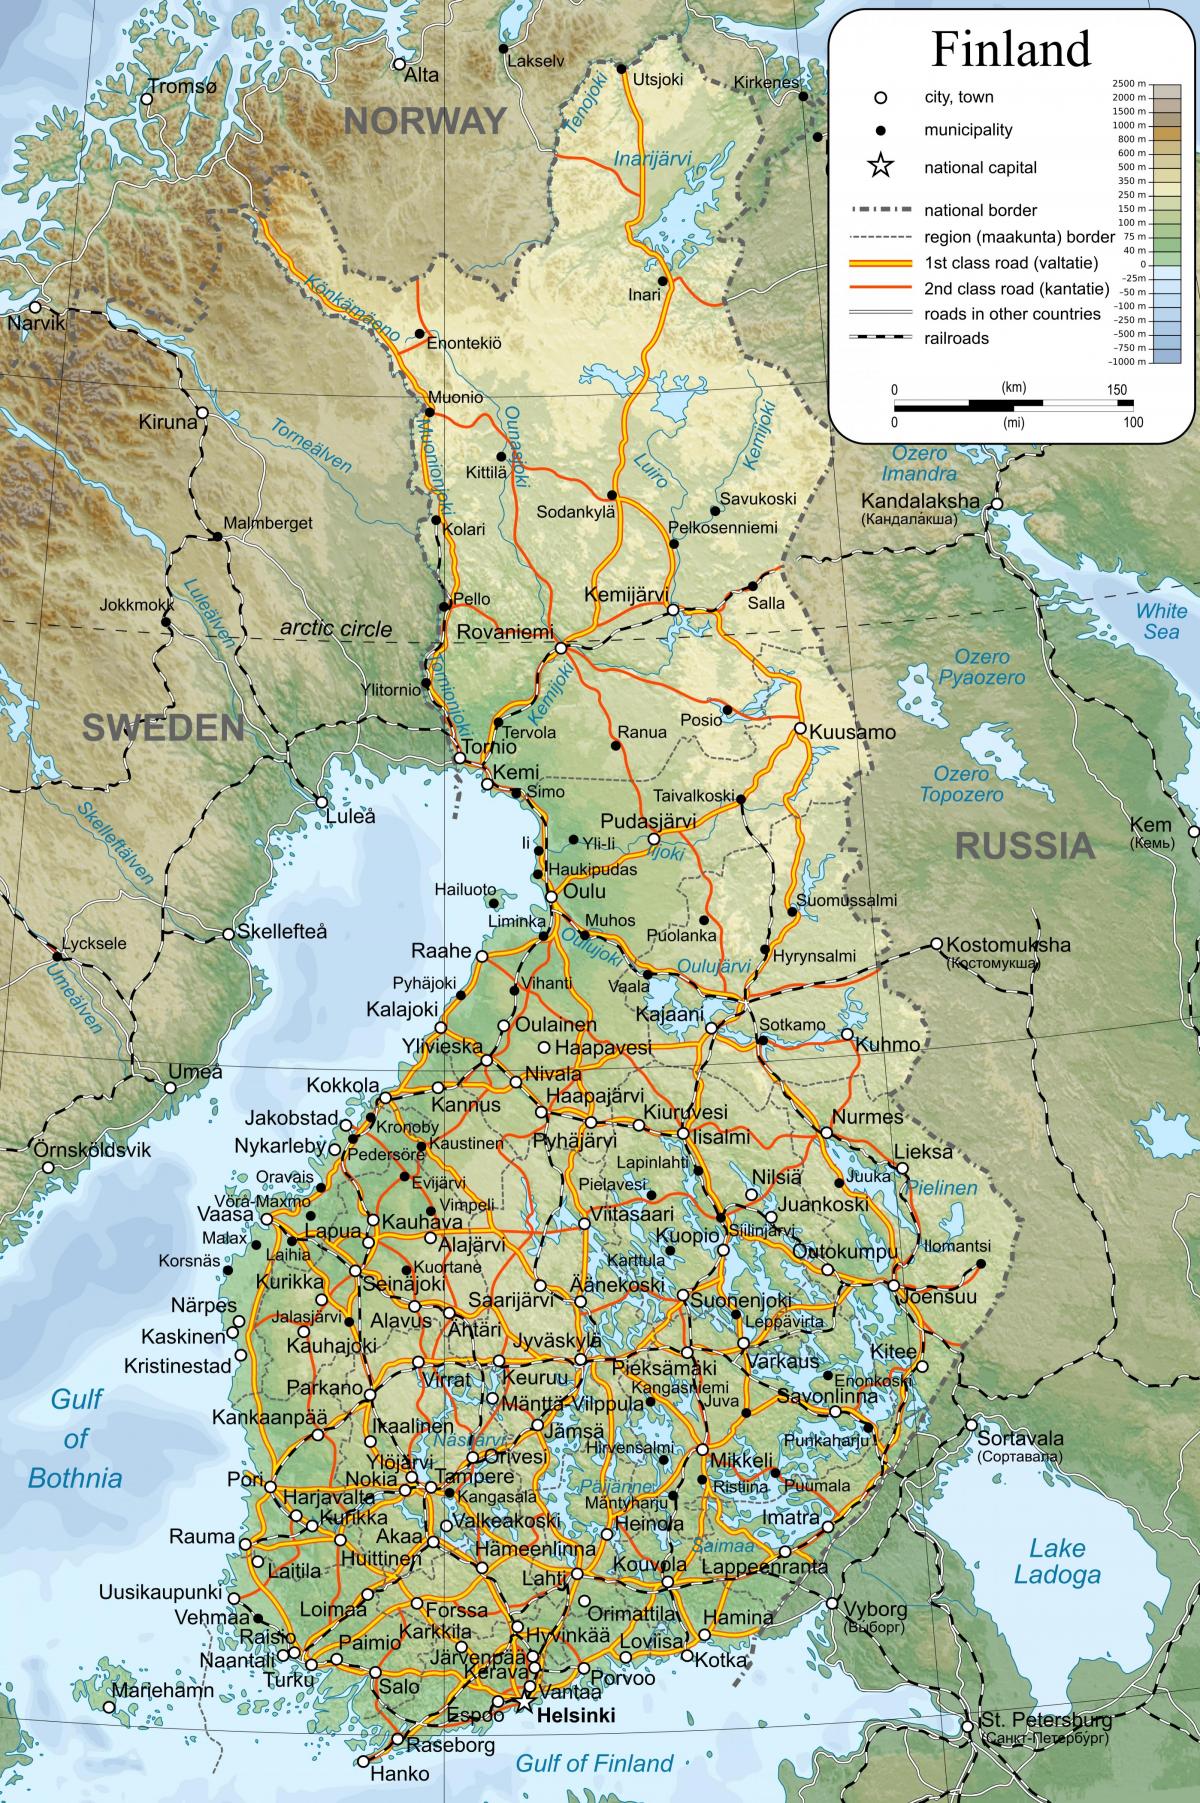 फिनलैंड दुनिया के नक्शे पर